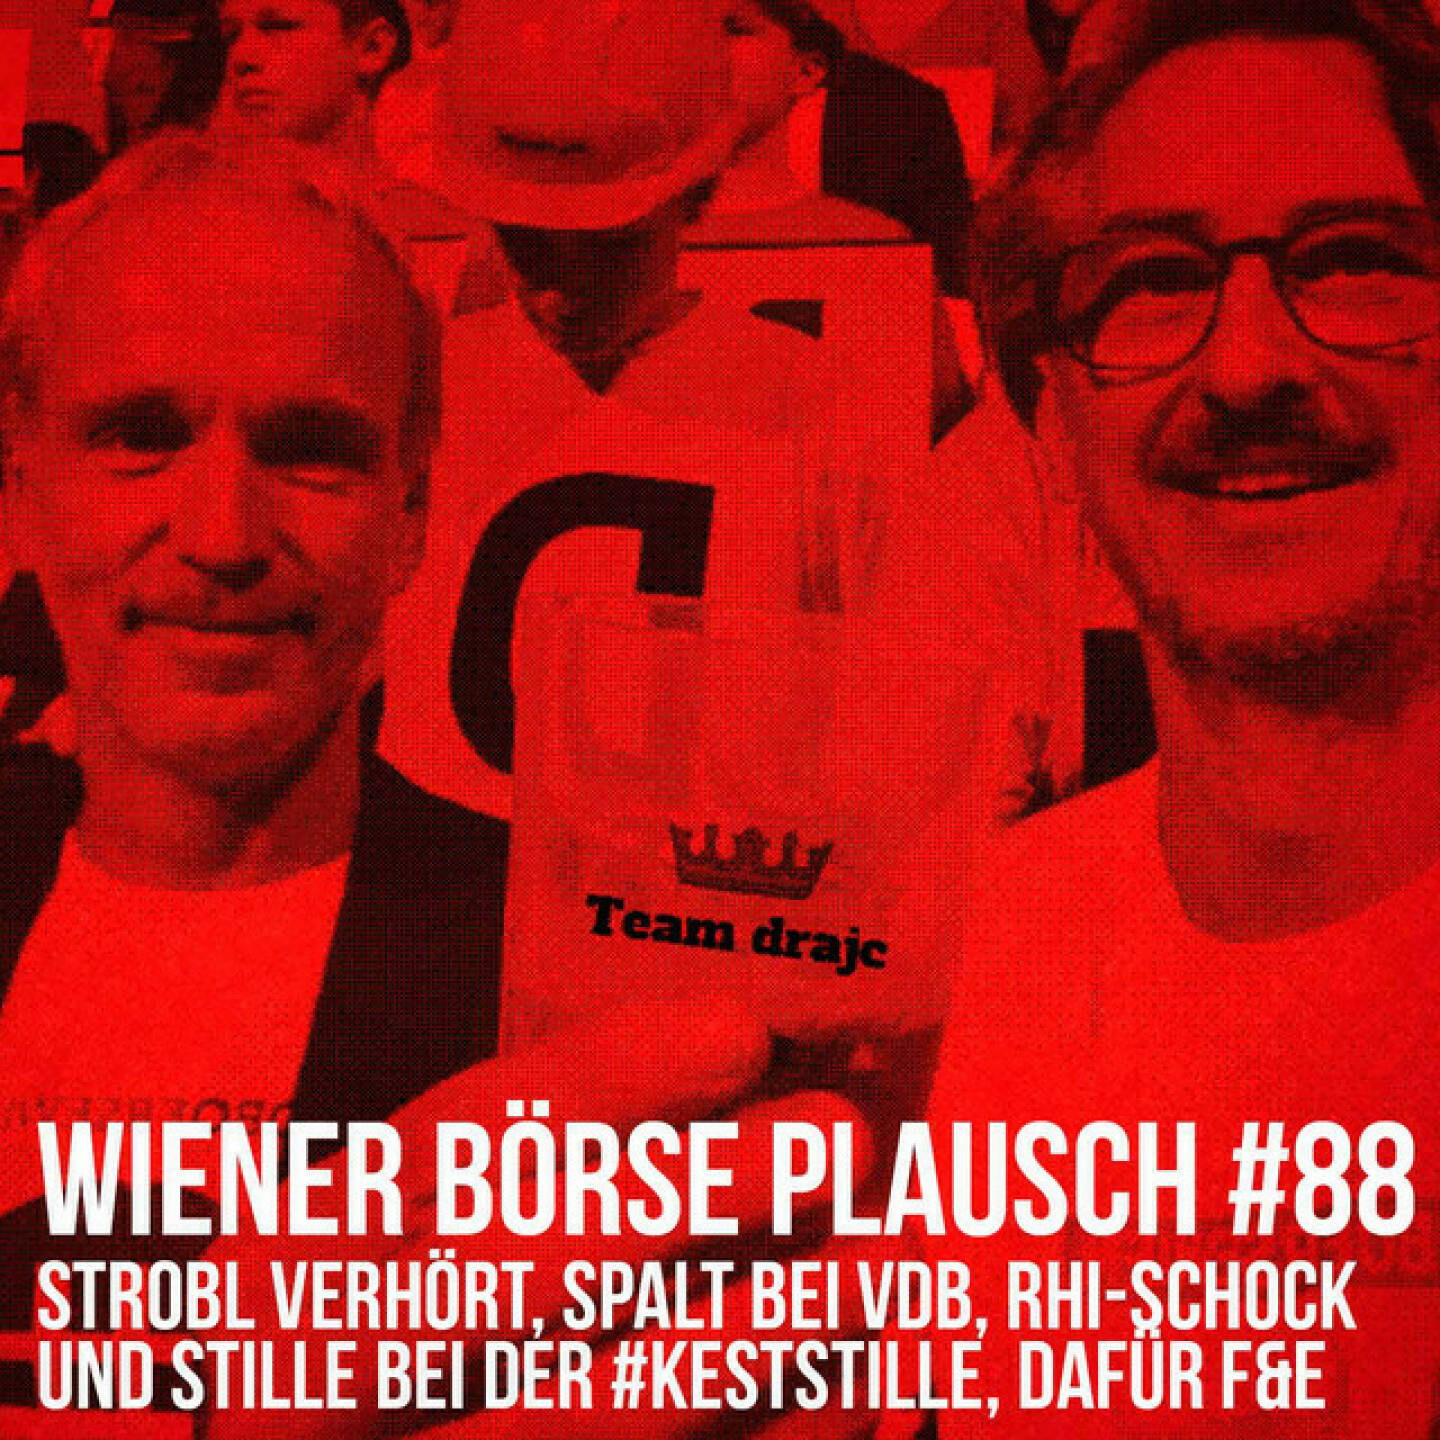 https://open.spotify.com/episode/3SGI0pjDWkyskUMXhtOSva
Wiener Börse Plausch #88: Strobl verhört, Spalt bei VdB, RHI-Schock und Stille bei der #keststille, dafür F&E - <p>Team drajc, das sind die Börse Social Network Eigentümer Christian Drastil und Josef Chladek, quatscht im Wiener Börse Plausch #88 heute wieder alternativ, denn nun hat es auch jc mit der Quarantäne erwischt und dra spricht den Plausch #88 als Monolog ein. Inhaltlich geht es um „Erzähl mir von Wien“, das Johann-Strobl-Verhör, Bernd Spalt meets VdB, die Börse bestätigt unsere Index-Predictions, weiters viel F&amp;E mit u.a. FACC, Telekom Austria, Fabasoft, Frequentis, ein RHI-Schock und Stille bei der #keststille.</p><br/><p>Die März-Folgen vom Wiener Börse Plausch sind präsentiert von Wienerberger,  CEO Heimo Scheuch hat sich im Q4 ebenfalls unter die Podcaster gemischt: <a href=https://open.spotify.com/show/5D4Gz8bpAYNAI6tg7H695E rel=nofollow>https://open.spotify.com/show/5D4Gz8bpAYNAI6tg7H695E</a> . Co-Presenter ist Trockeneis-online.com , siehe auch die überarbeitete <a href=https://boersenradio.at rel=nofollow>https://boersenradio.at</a></p><br/><p>Risikohinweis: Die hier veröffentlichten Gedanken sind weder als Empfehlung noch als ein Angebot oder eine Aufforderung zum An- oder Verkauf von Finanzinstrumenten zu verstehen und sollen auch nicht so verstanden werden. Sie stellen lediglich die persönliche Meinung der Podcastmacher dar. Der Handel mit Finanzprodukten unterliegt einem Risiko. Sie können Ihr eingesetztes Kapital verlieren.</p>